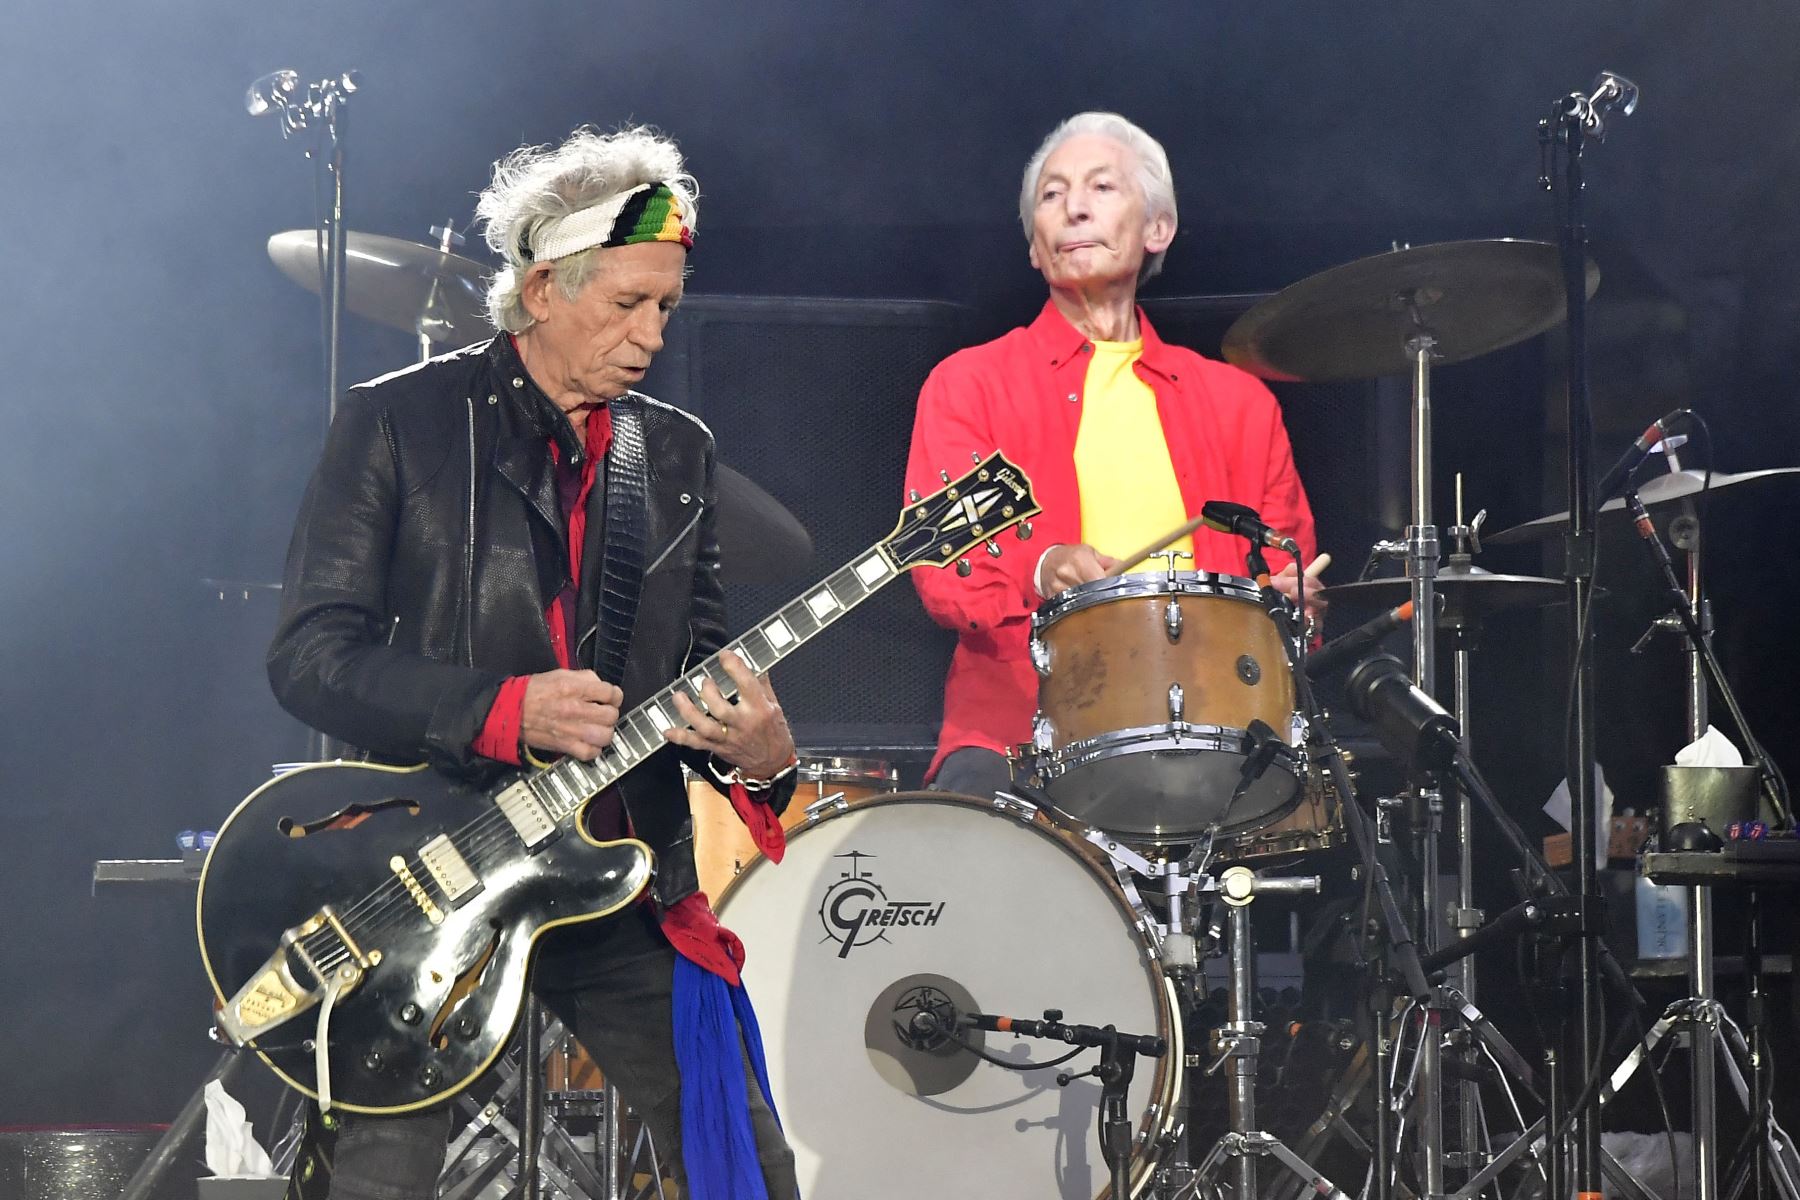 En esta foto de archivo tomada el 22 de junio de 2018, Keith Richards y Charlie Watts de los Rolling Stones se presentan durante un concierto en el Estadio Olímpico de Berlín. Charlie Watts, baterista de la legendaria banda británica de rock and roll The Rolling Stones, murió  a los 80 años.
Foto: AFP